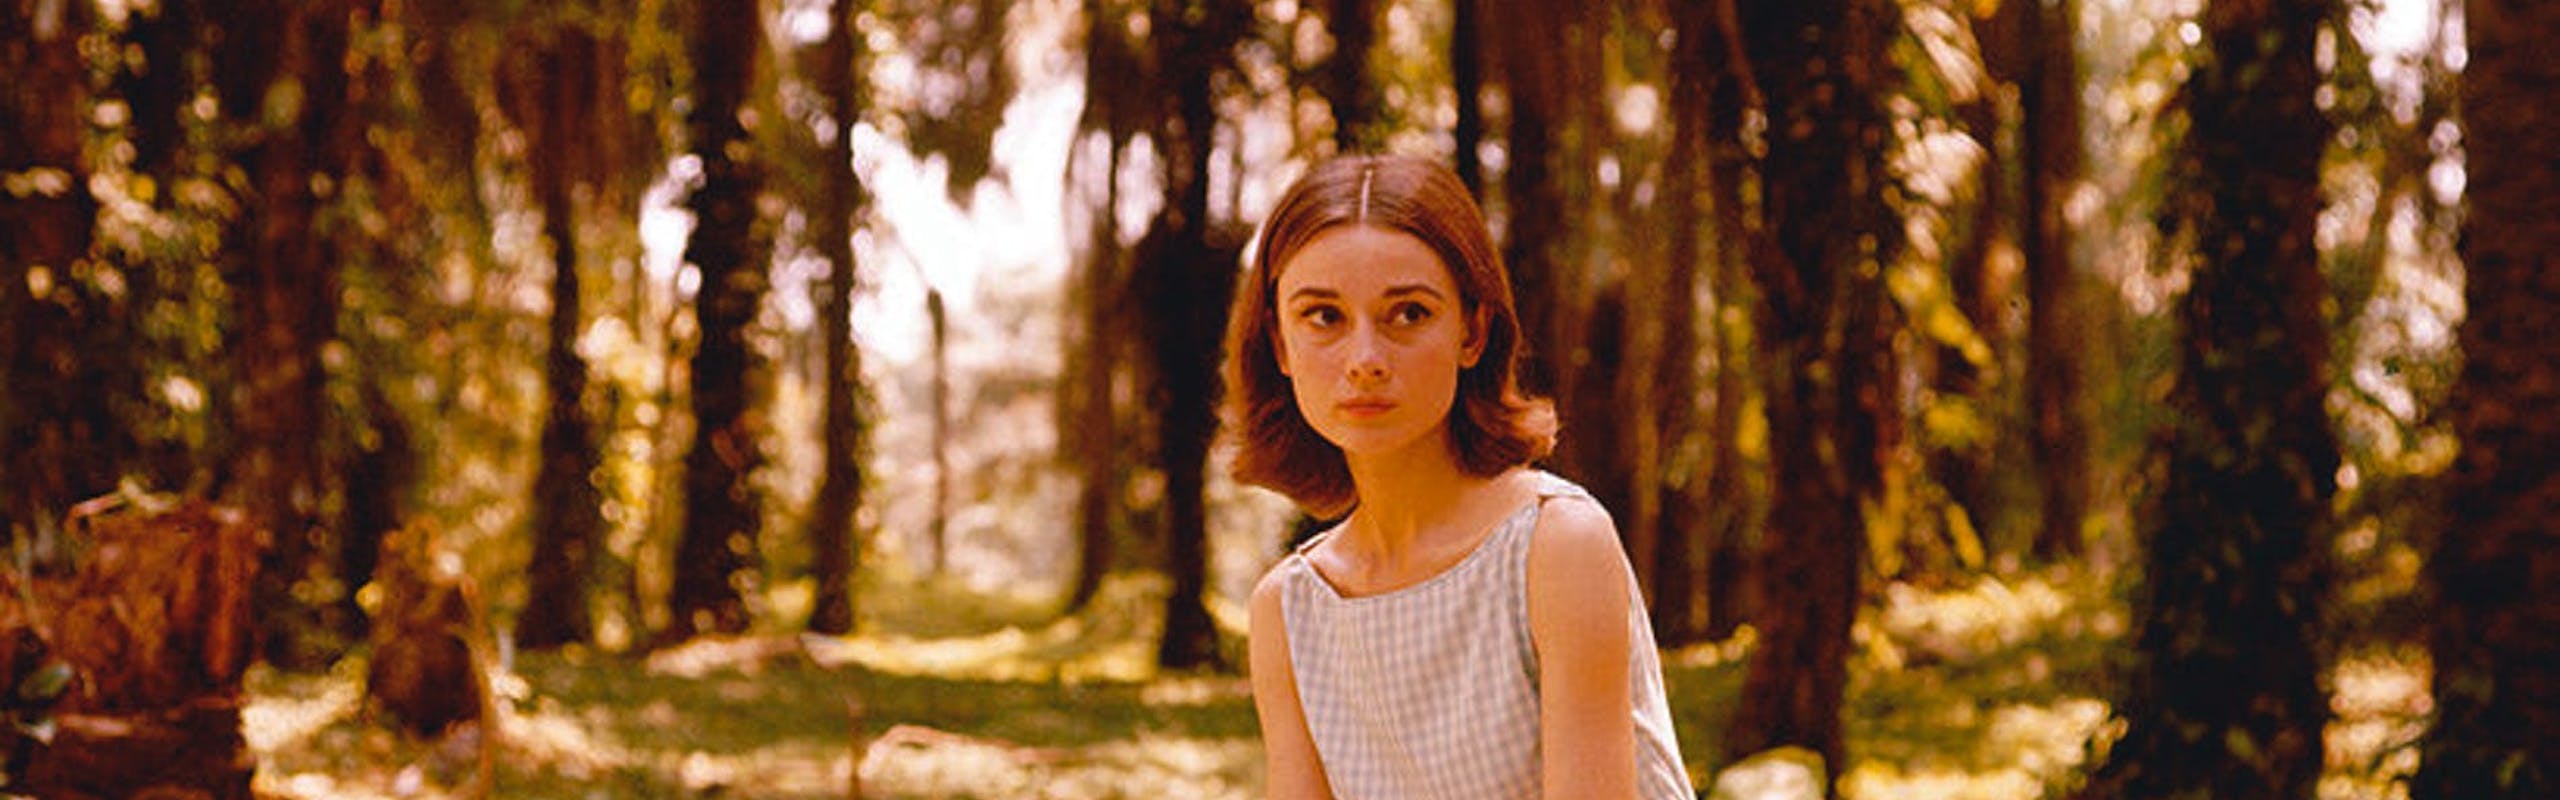 Audrey-Hepburn-unseen-photos